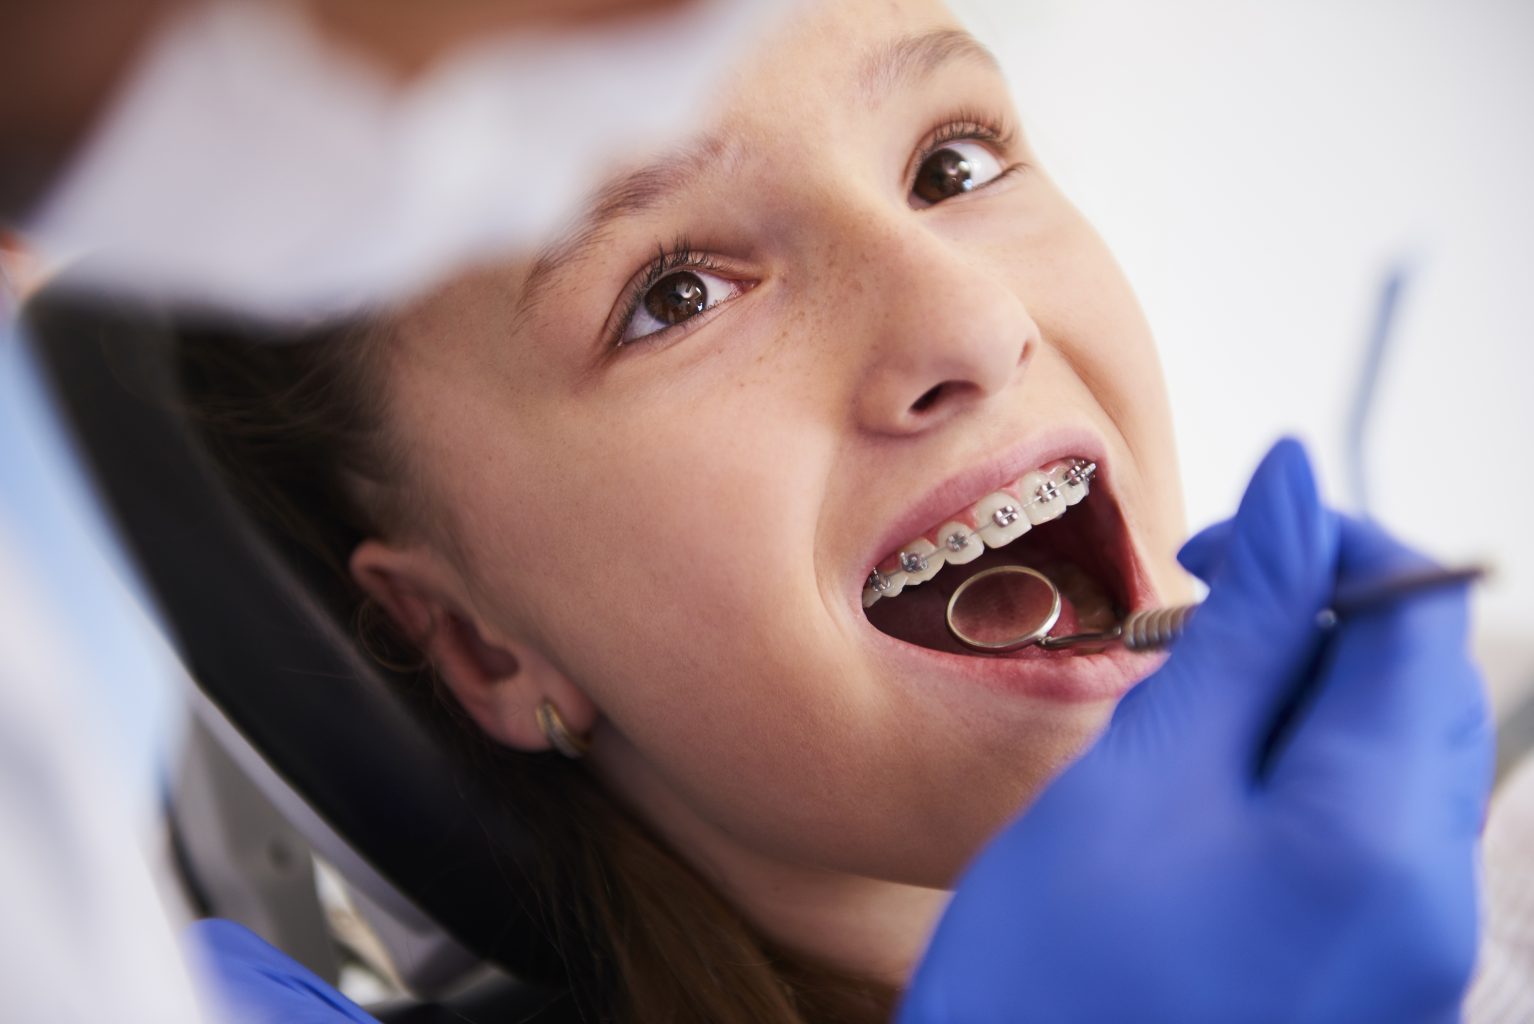 Zahnarzt Shwehdy Attendorn Implantologie Dentist Gesunde Zähne zahnarztpraxis Karies Paradontose prophylaxe